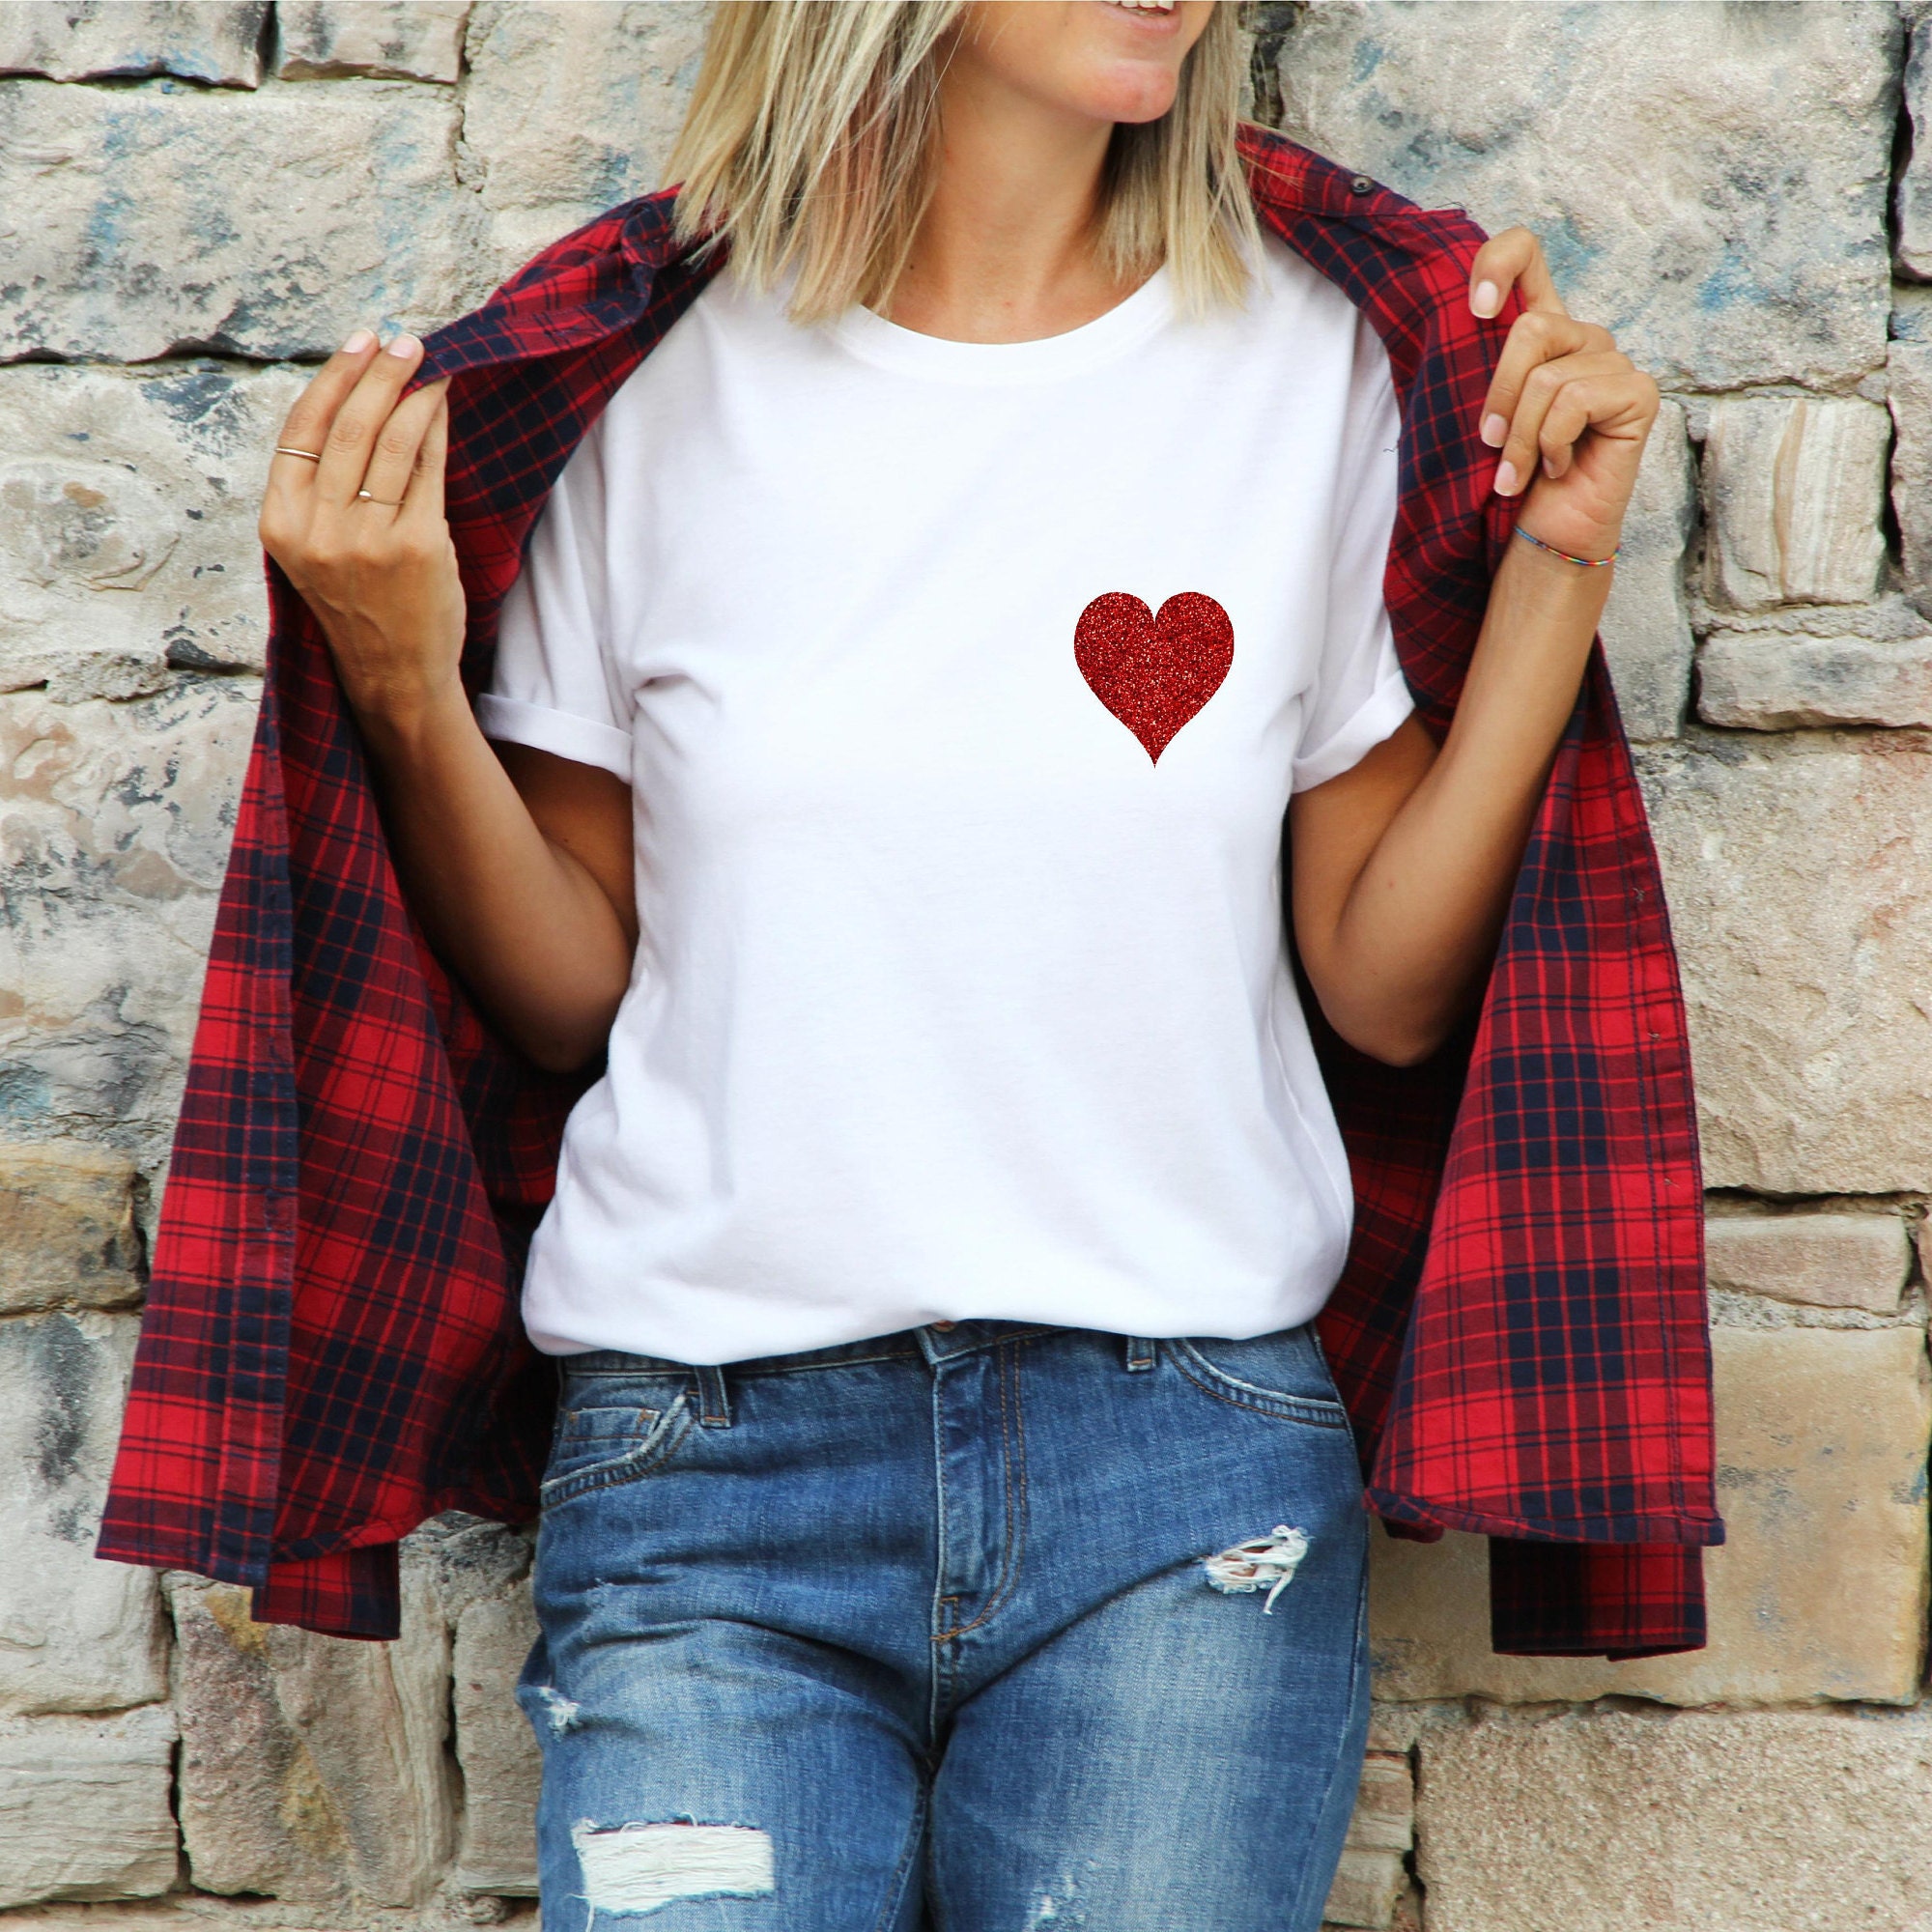 LV Inspired Glitter Heart Shirt - LV Inspired Glitter Heart Shirt -  #HeartShirt